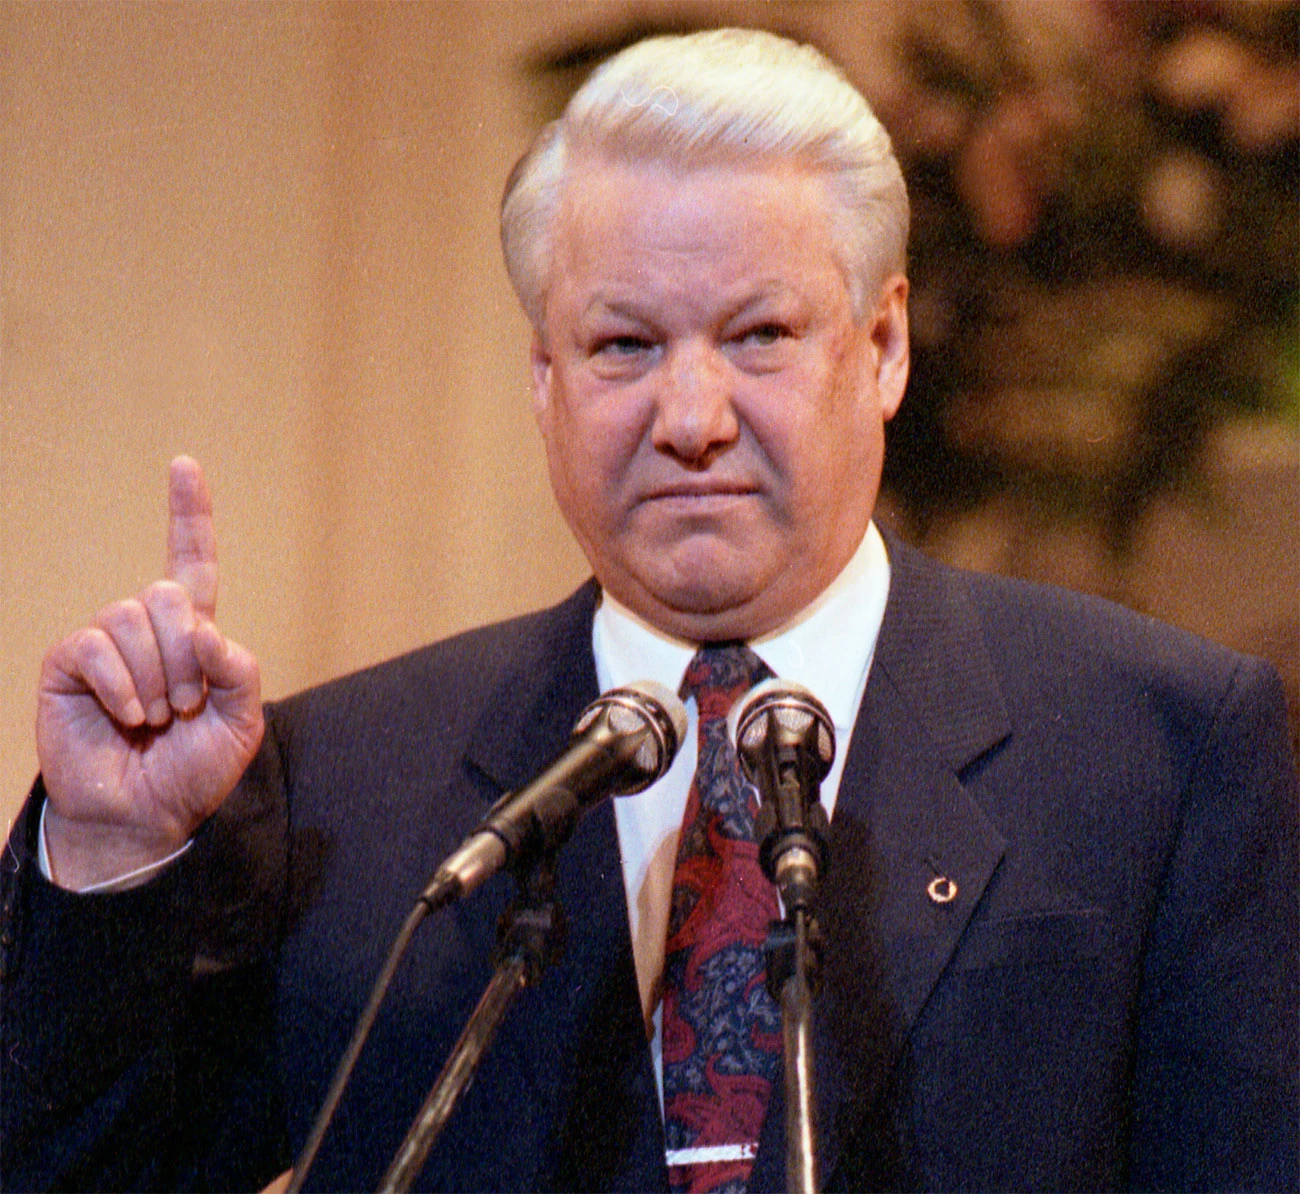 <p>Обращаясь к россиянам в 1993 году, Борис Ельцин поздравлял с новым праздником, который назвал Днем независимости</p>